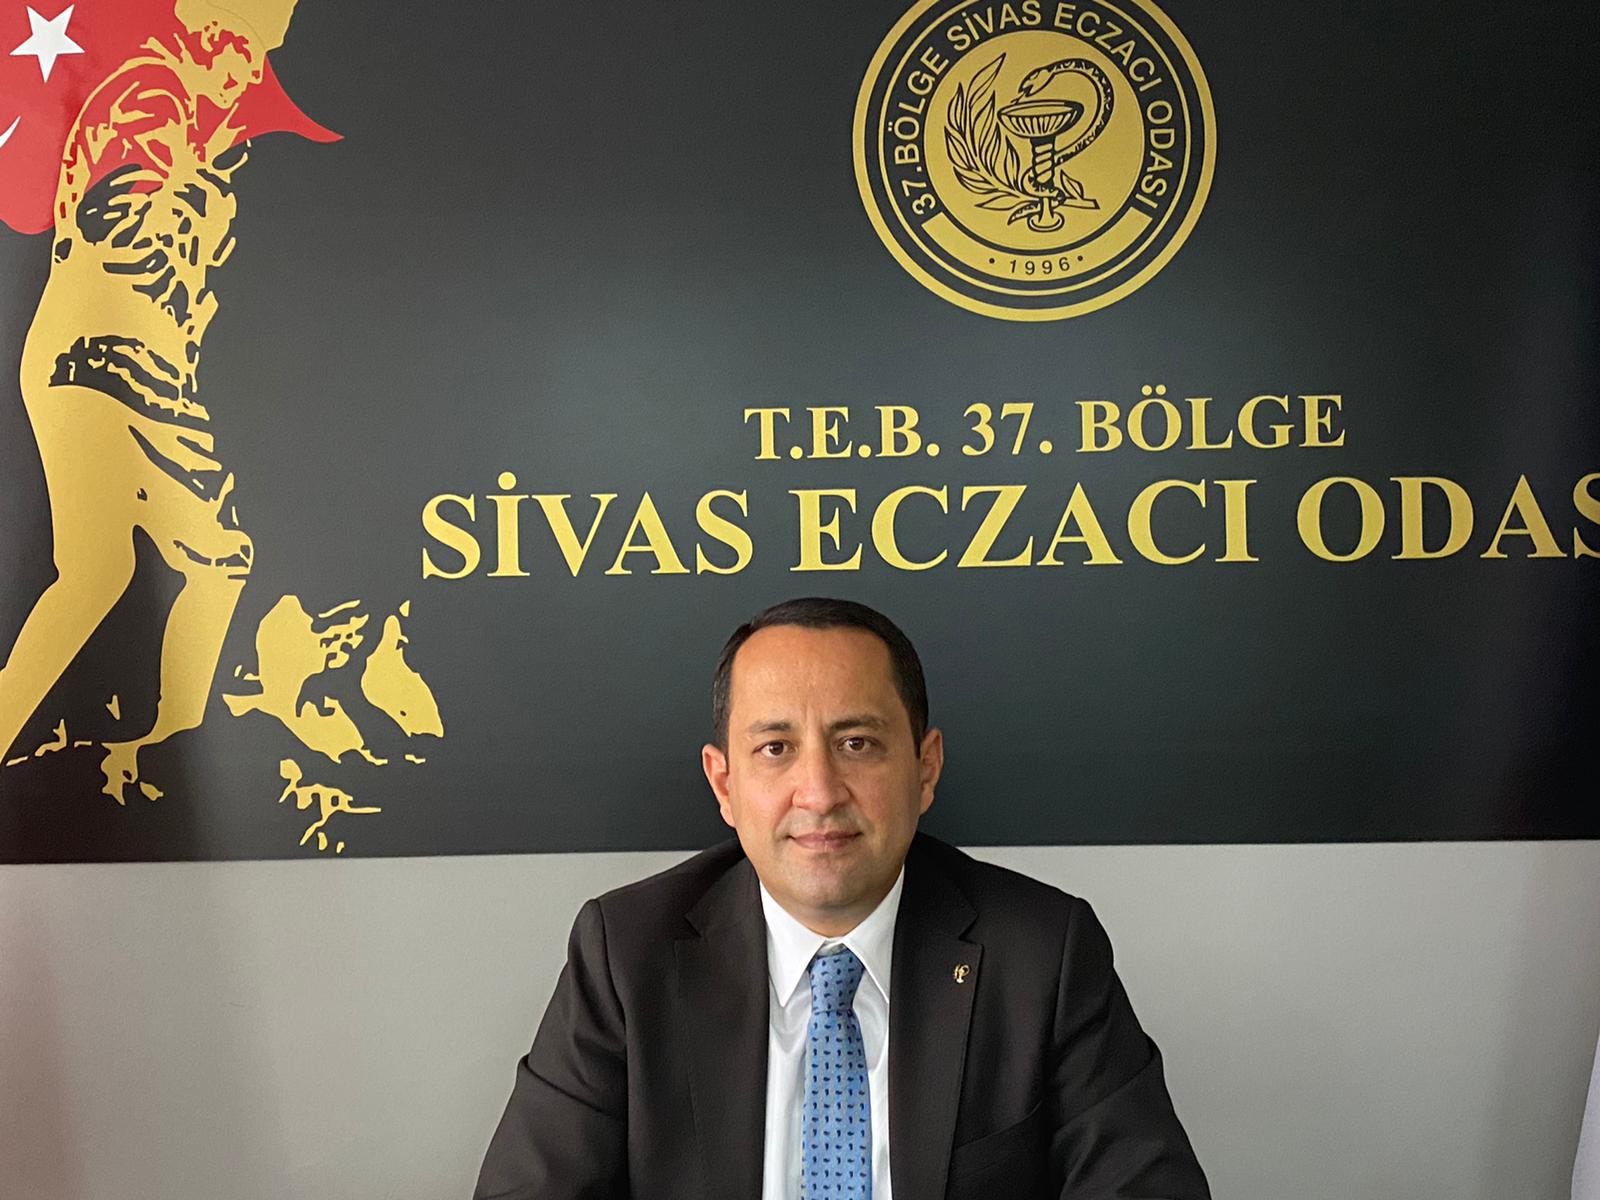 Sivas Eczacı Odası Başkanı Bahadır Eren  grip aşısı ile ilgili açıklama yaptı…